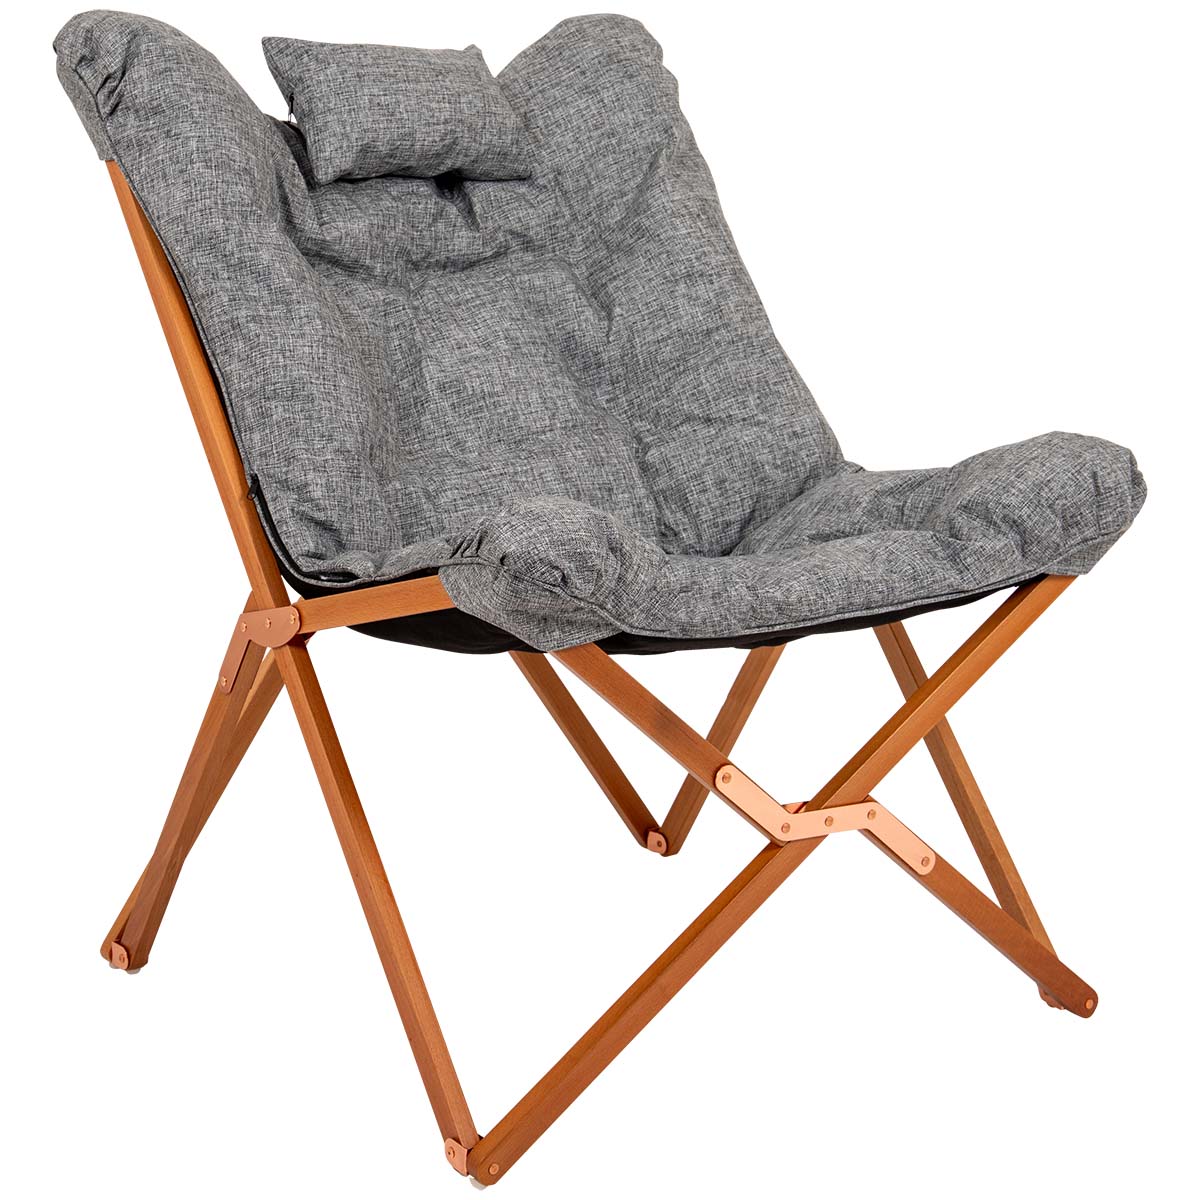 1200396 Een milieuvriendelijke en zeer comfortabele relaxstoel uit de Urban Outdoor collectie. Deze stoel is voorzien van een stijlvol en stevig houten frame met FSC certificaat. De dikke gepolsterde zitting is gemaakt van gerecycled Oxford polyester en heeft een linnen look. Door de dikke gepolsterde zitting is deze extra comfortabel. De gerecyclede stof en het houten frame maken de relaxstoel eco-friendly. De combinatie van een brede en diepe zit, de gepolsterde stof en het hoofdkussen maakt deze stoel zeer comfortabel. Het frame is inklapbaar waardoor de stoel eenvoudig is mee te nemen. Maar ook in de woonkamer, op het balkon of in de tuin kan deze stoel worden gebruikt.